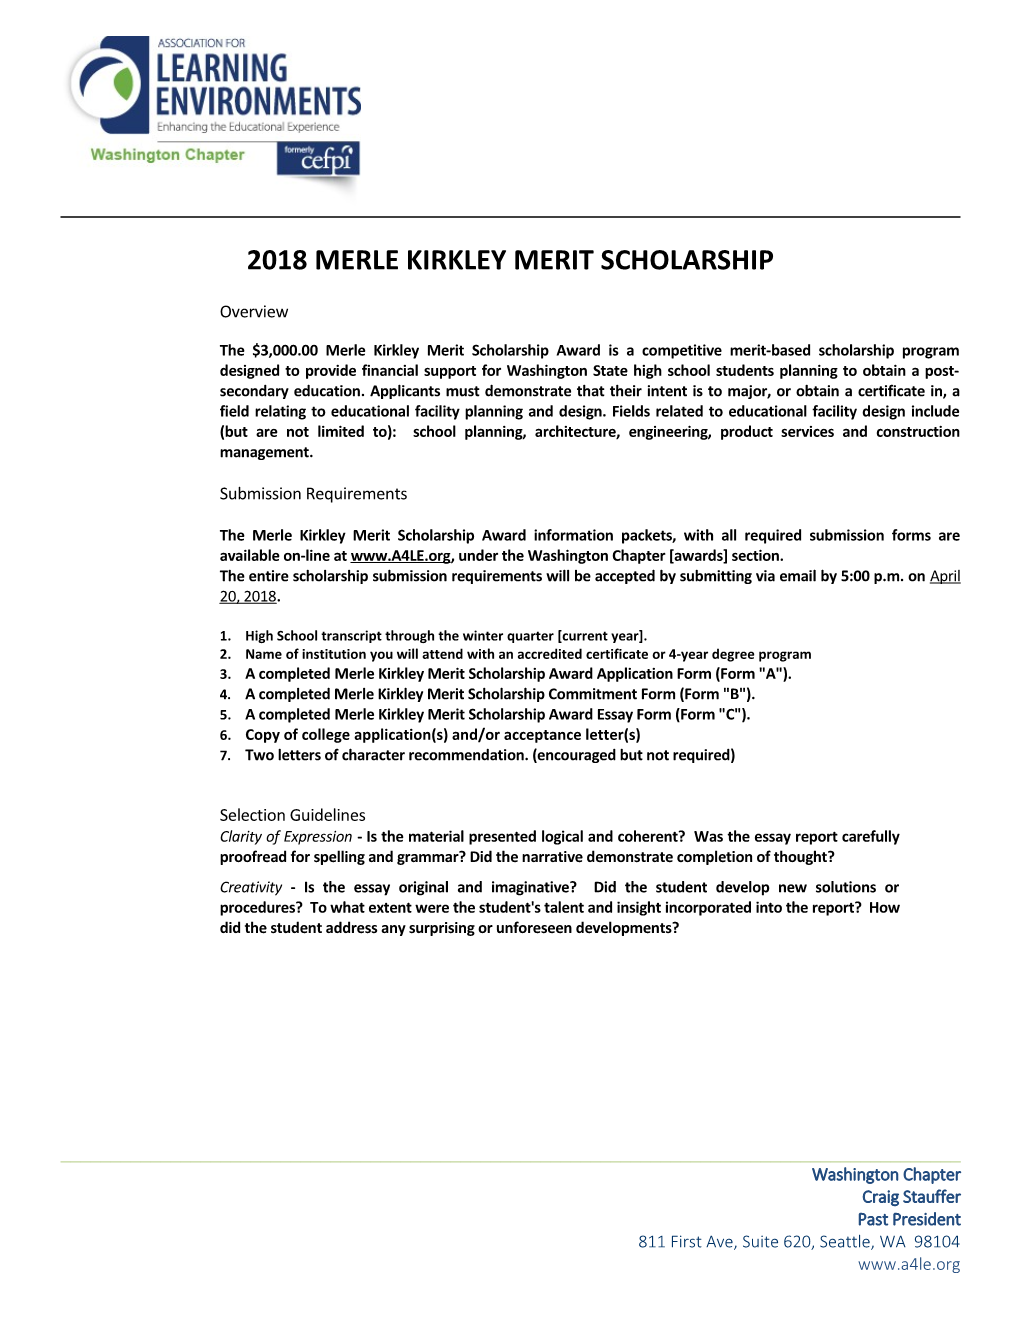 2018 Merle Kirkley Merit Scholarship